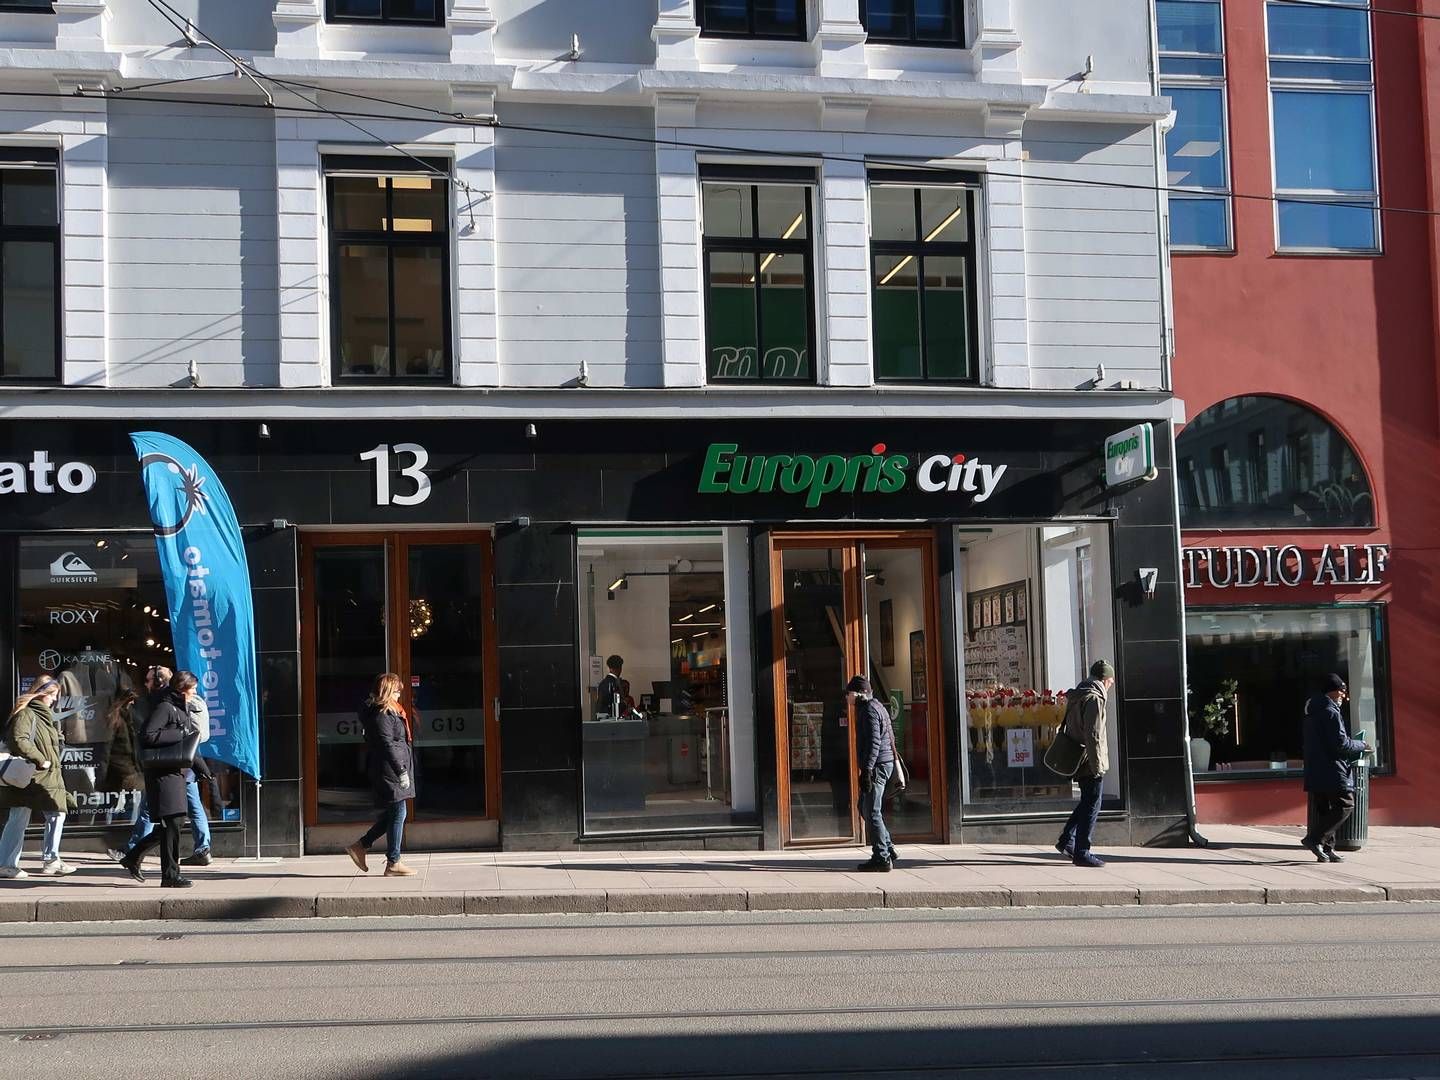 ÅPNET I DAG: Europris City-butikken i City er kjedens butikk nummer 278. | Foto: Øystein Byberg